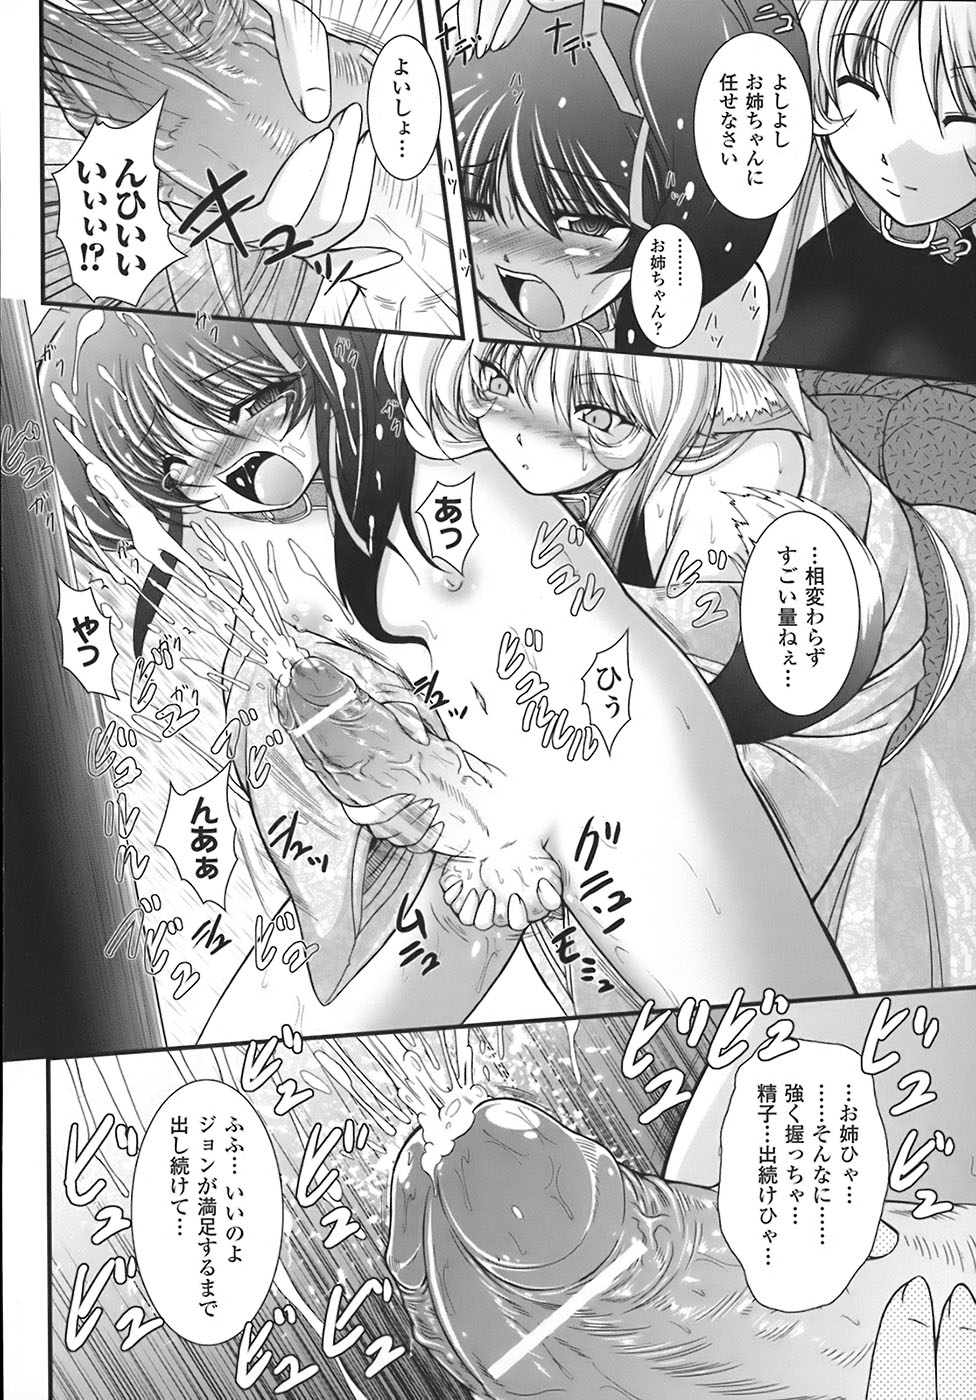 [Oohashi Takayuki] World is mine page 39 full